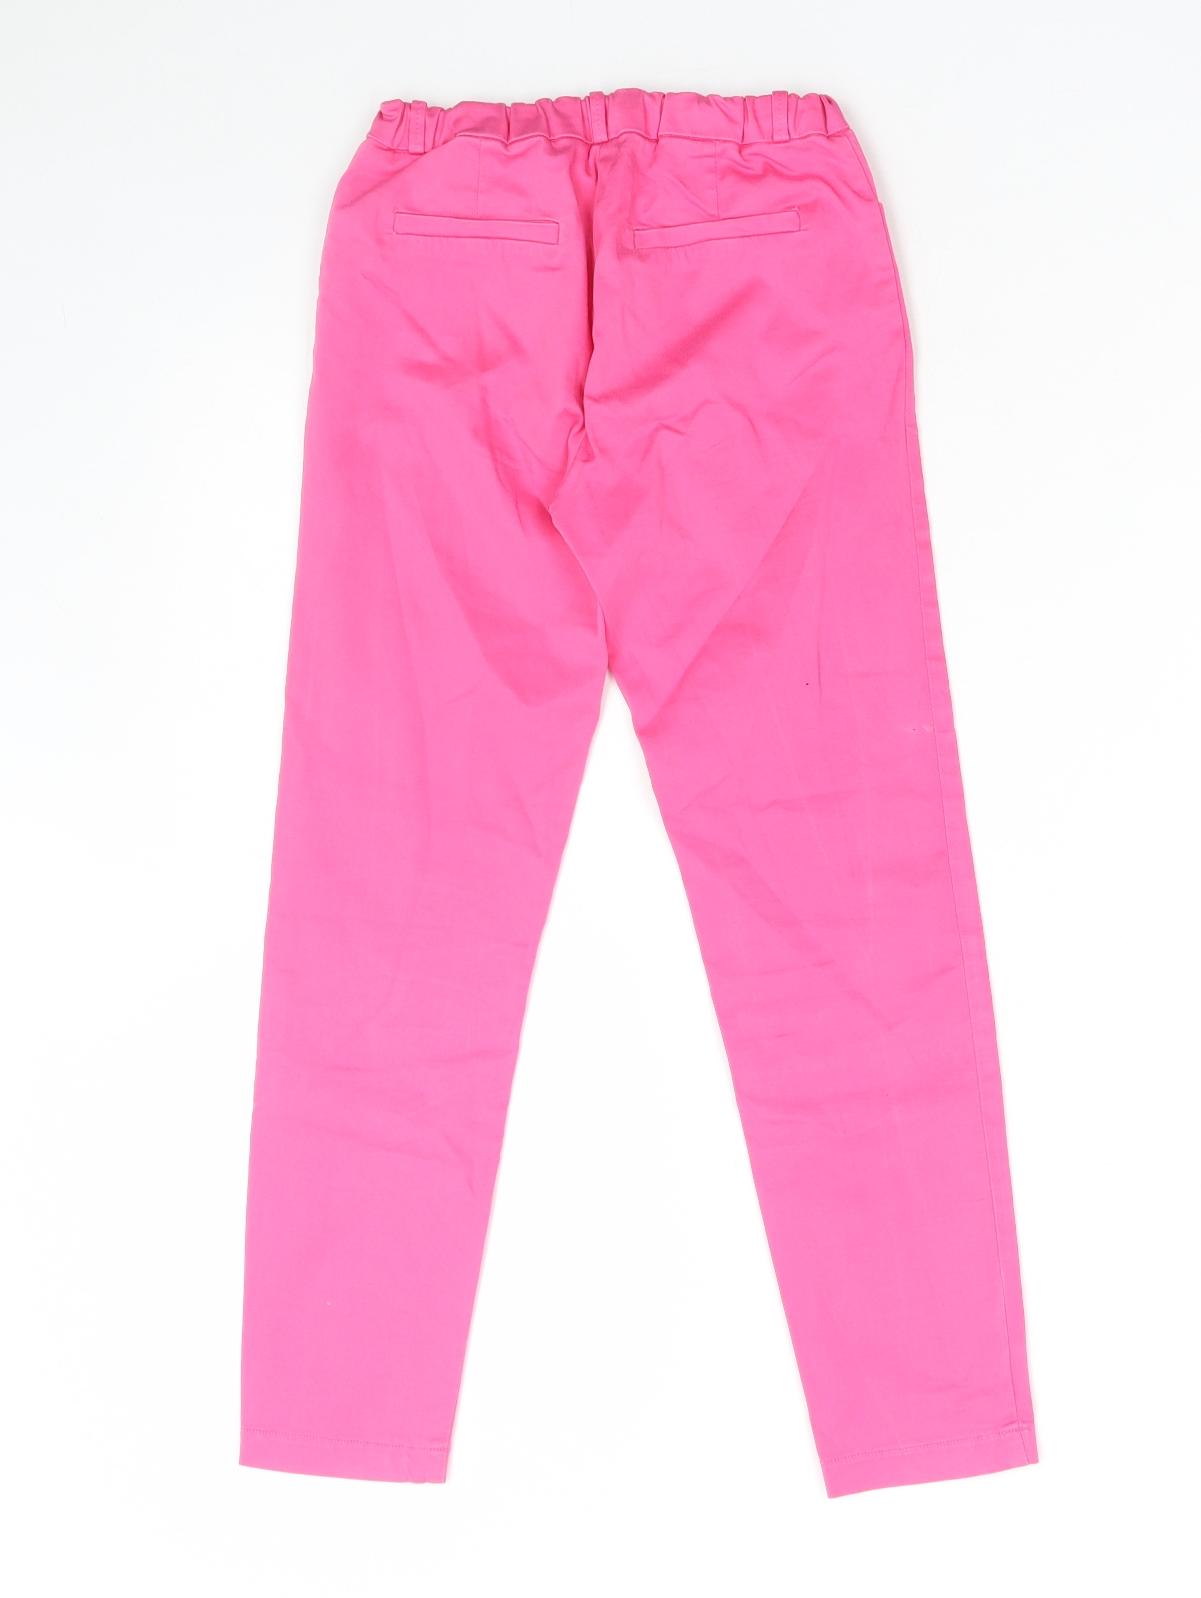 Zara Girls Pink Polyester Jogger Trousers Size 9 Months Regular Button